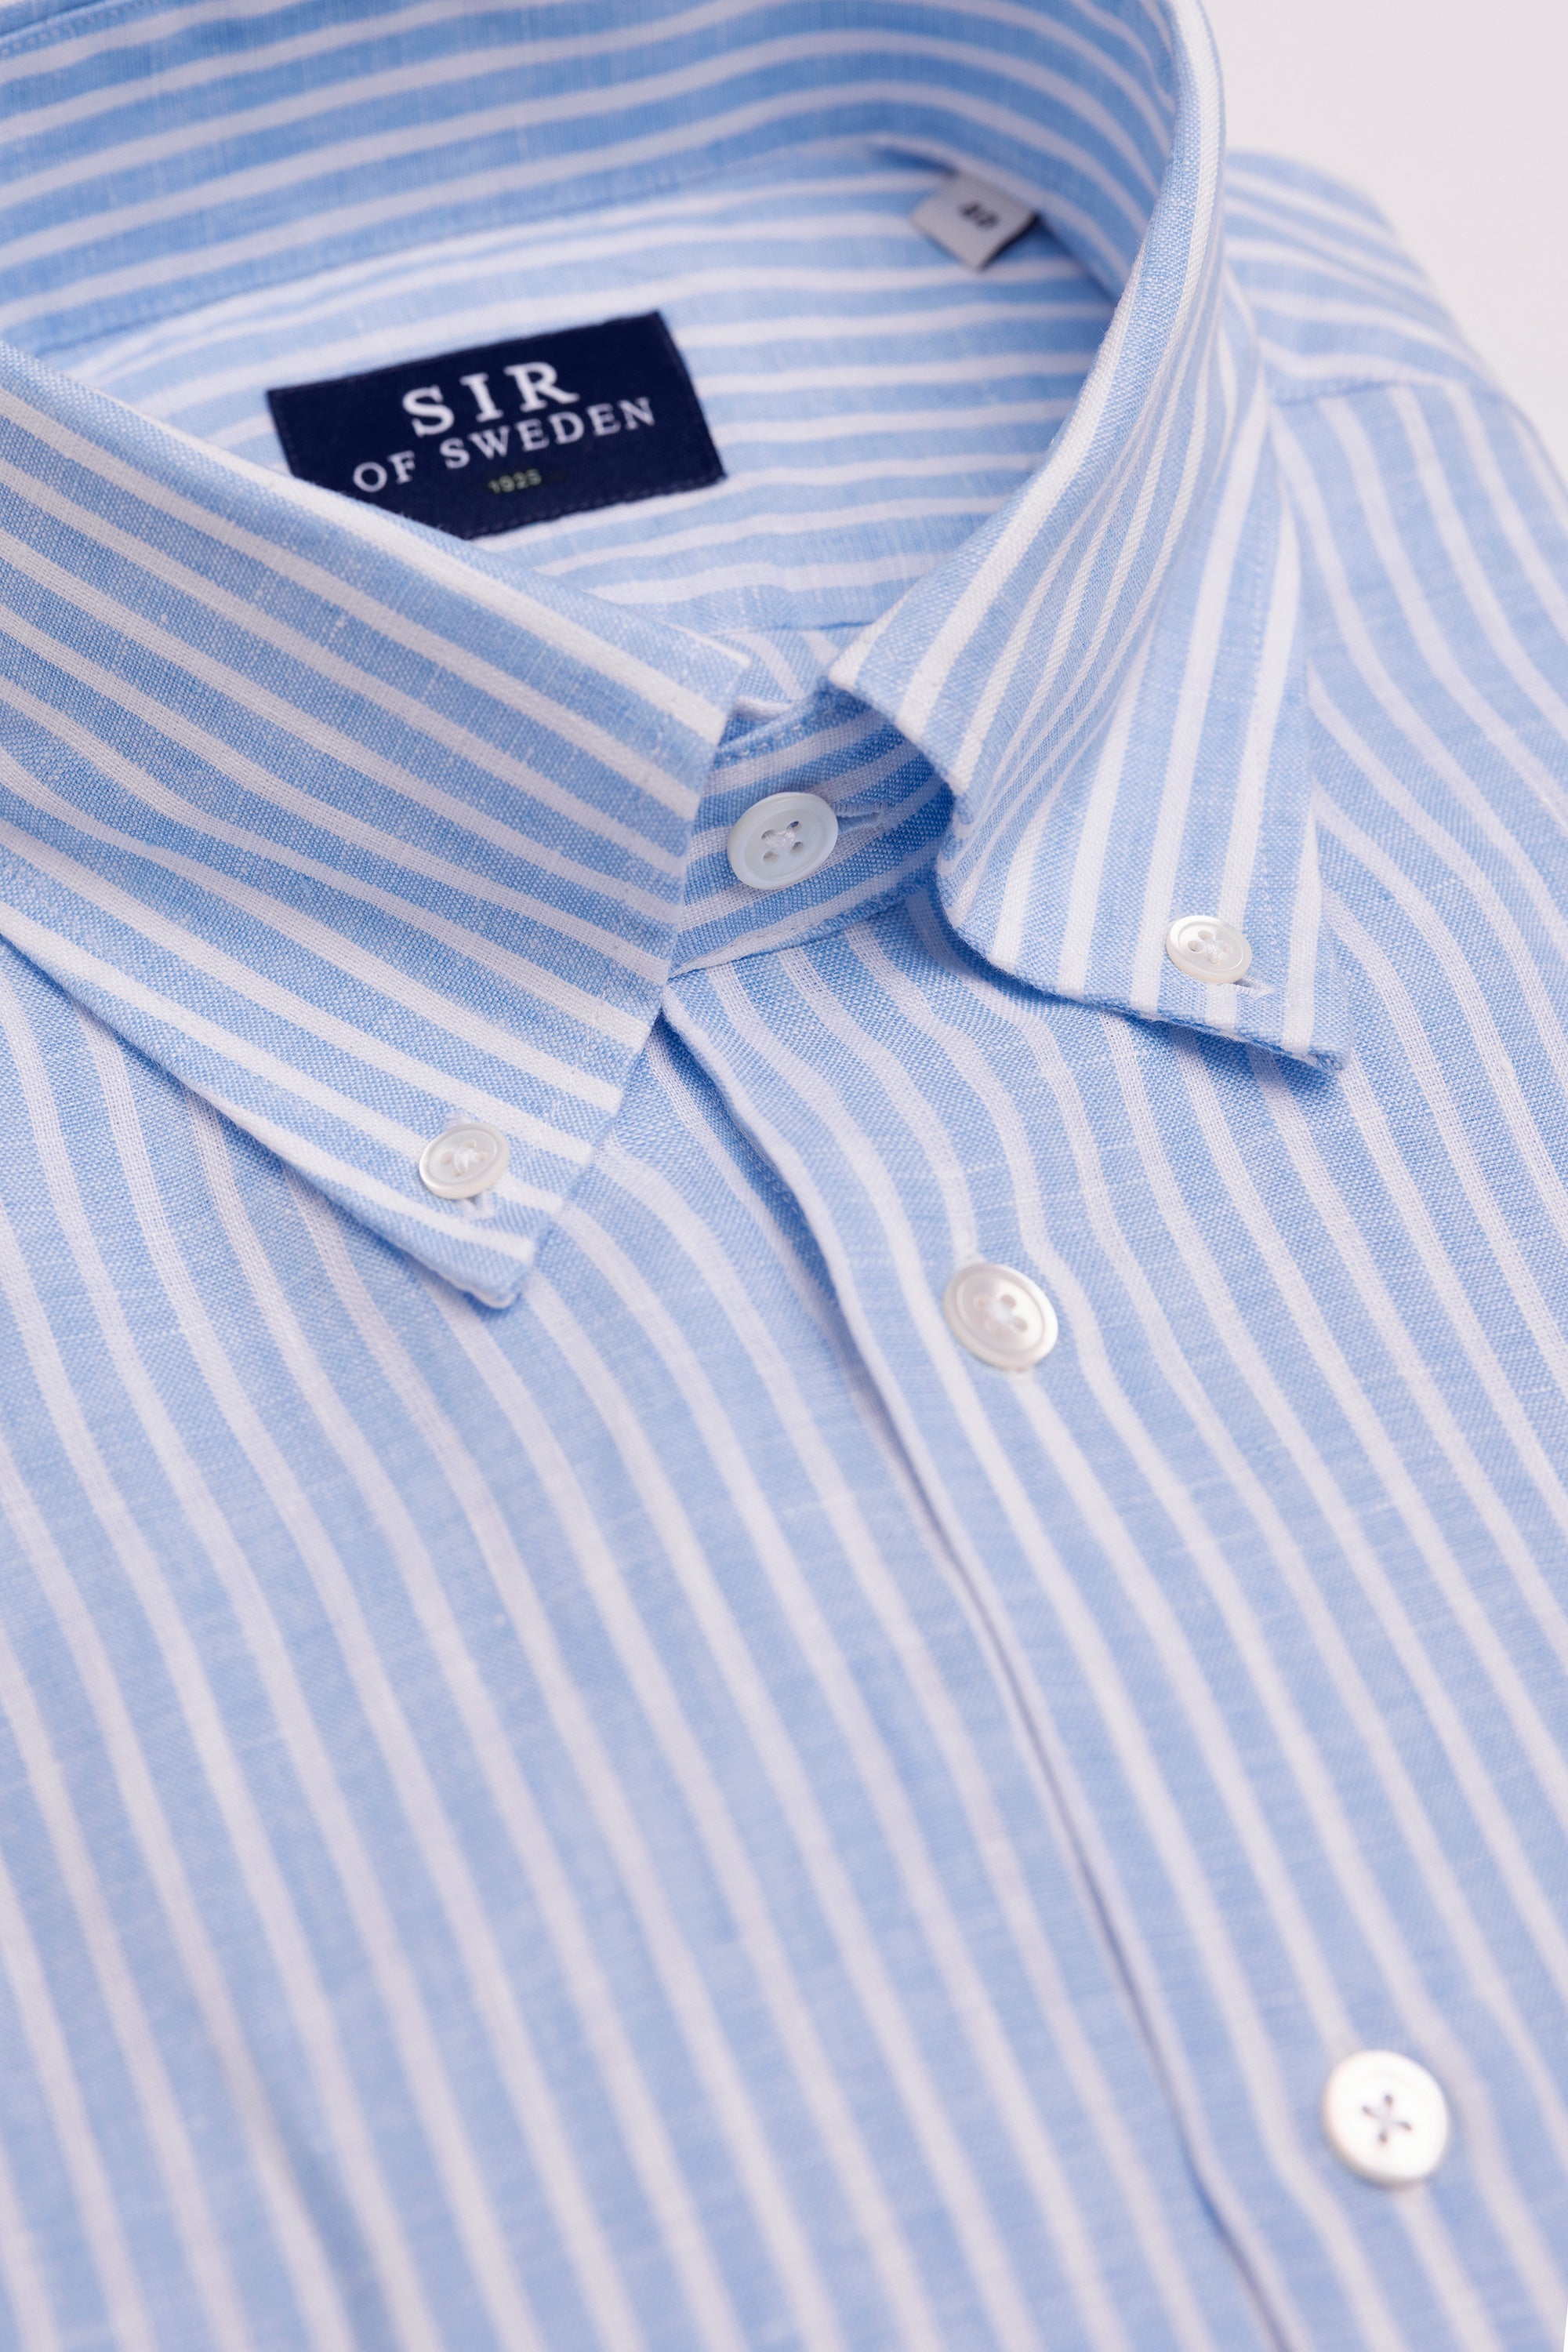 Jerry Light Blue Striped Linen Shirt